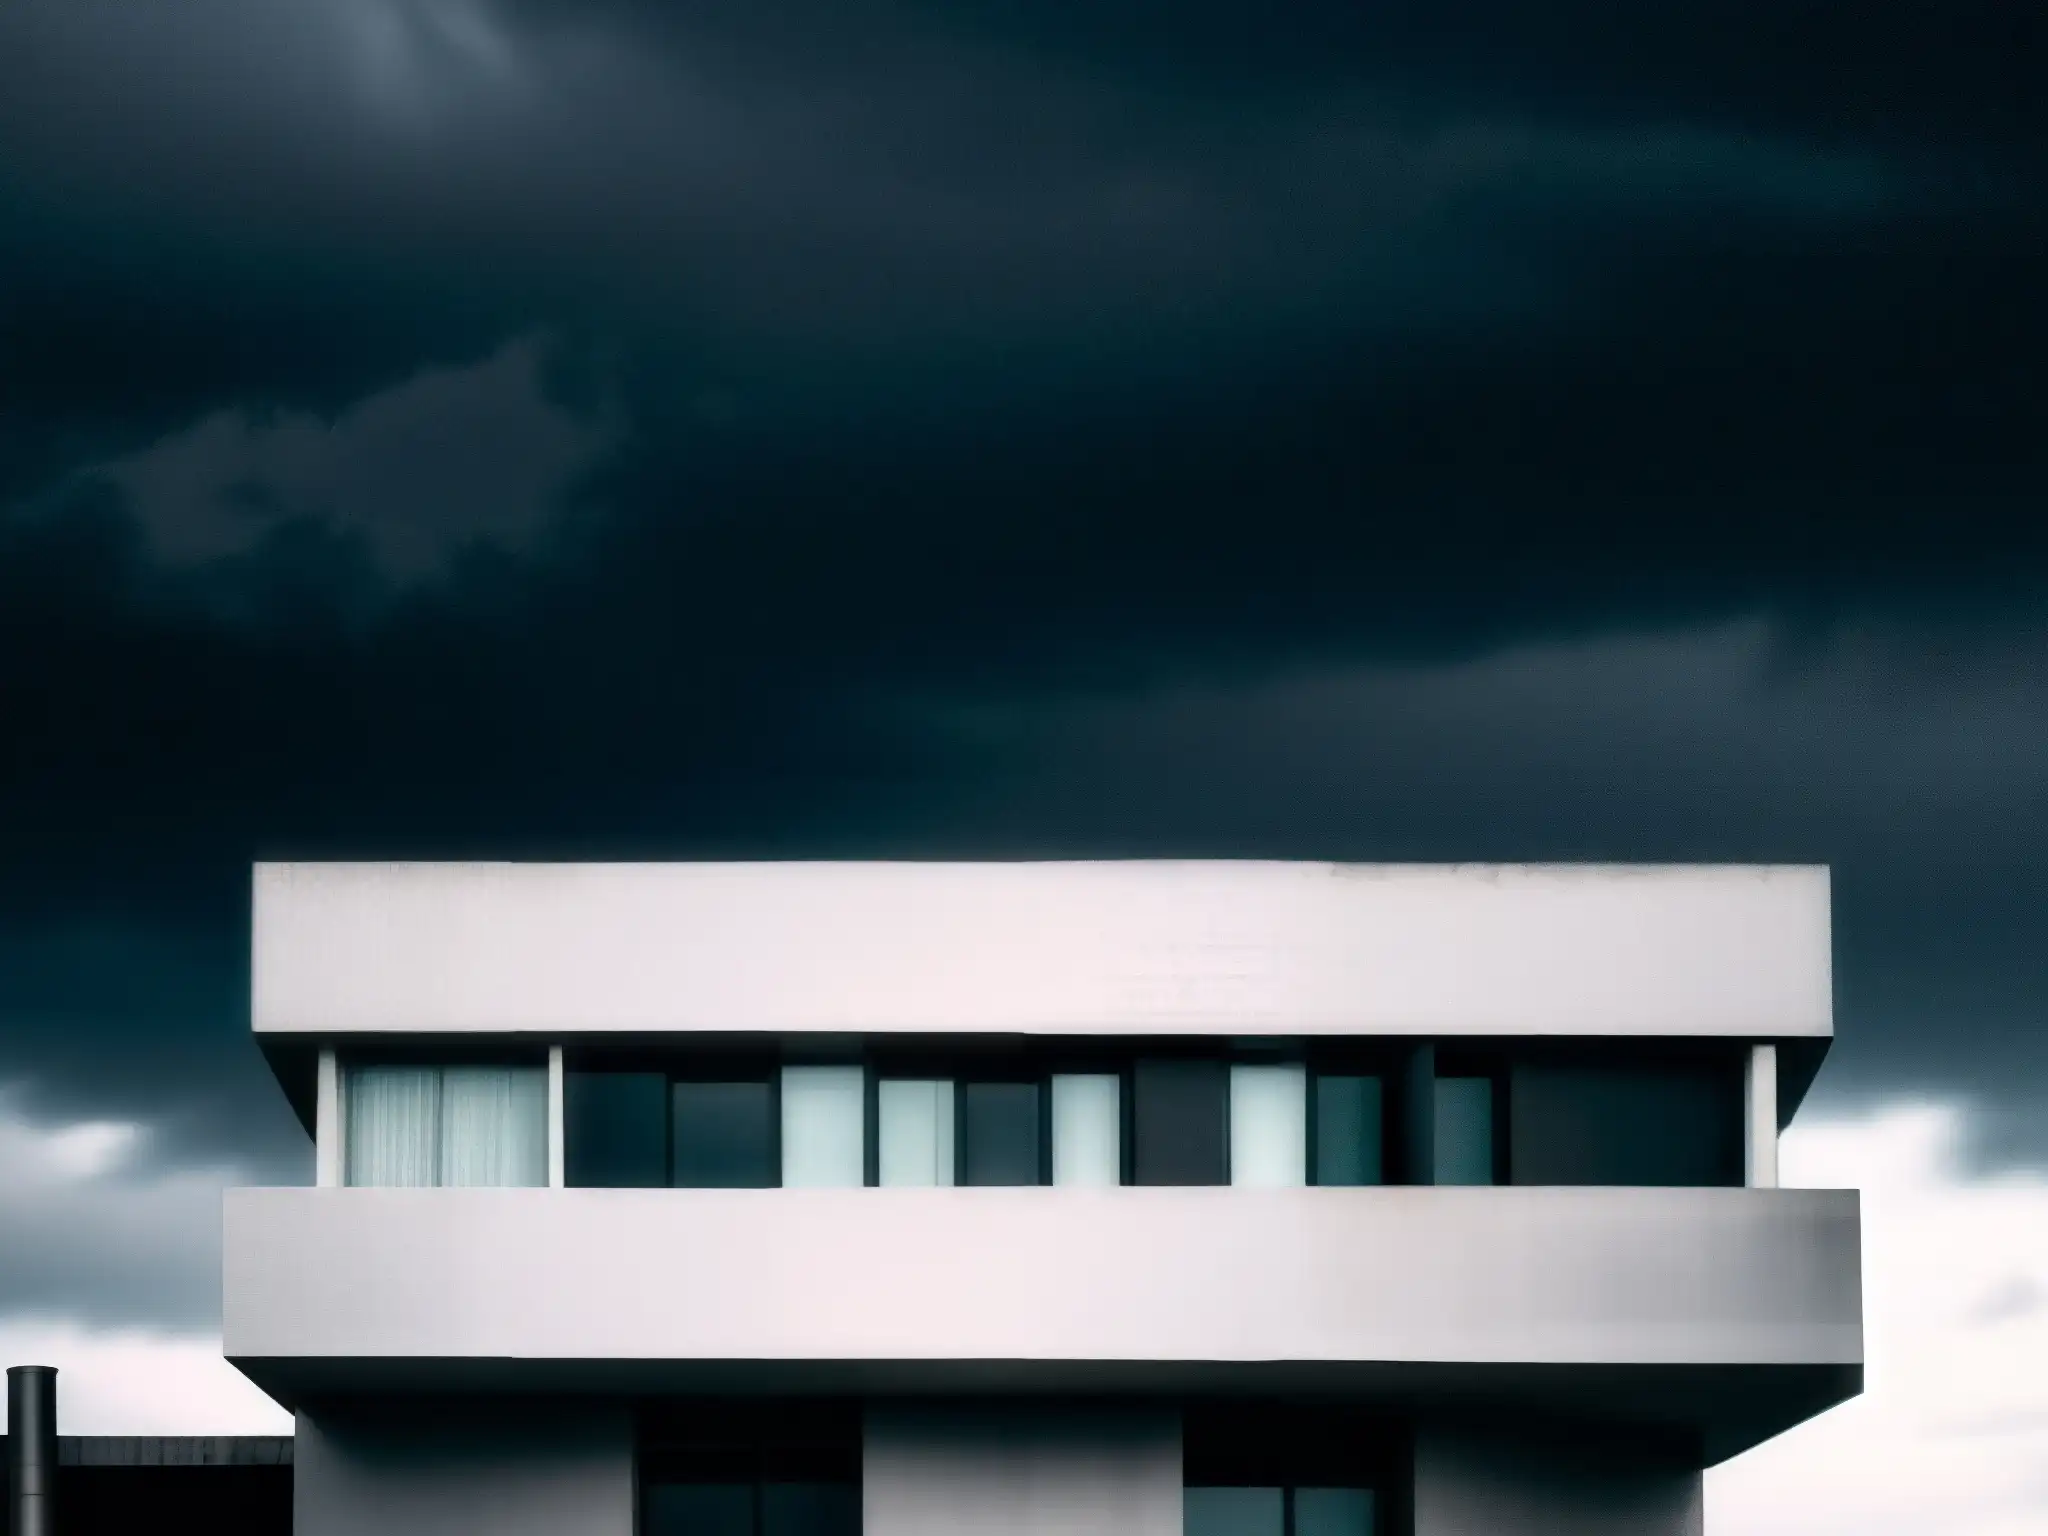 La Casa de los Tubos Oscuros, moderna arquitectura en contraste con un cielo nublado y misterioso